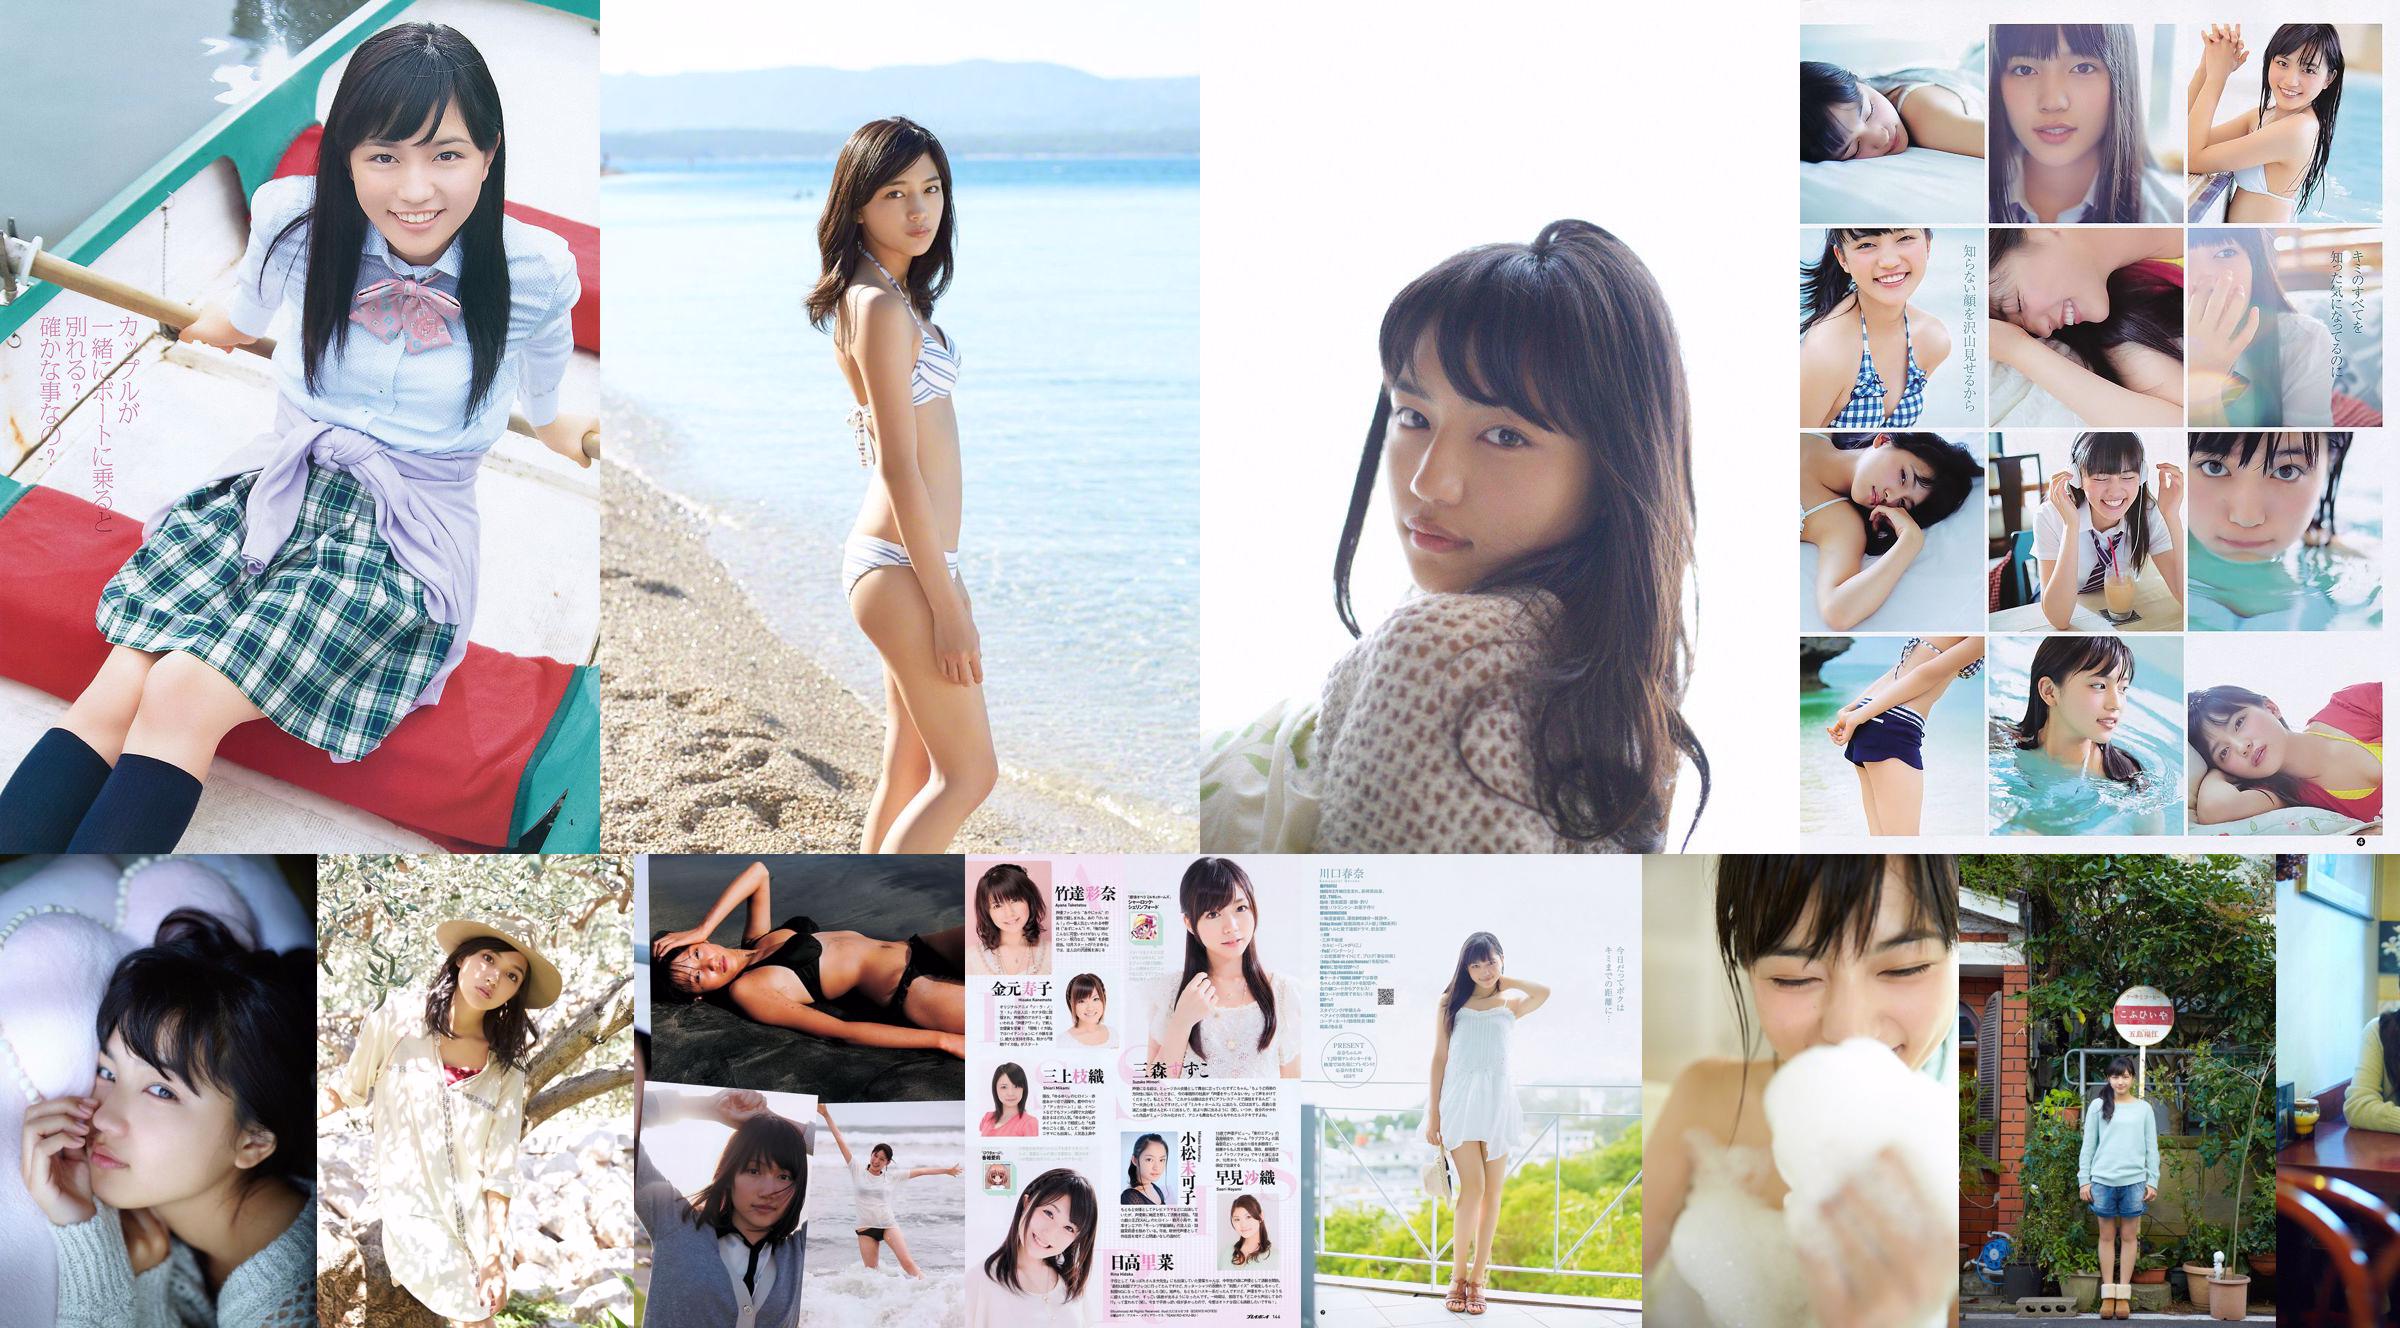 Haruna Kawaguchi Yumi Sugimoto [Weekly Young Jump] 2012 No.18 Photograph No.495d90 Страница 1